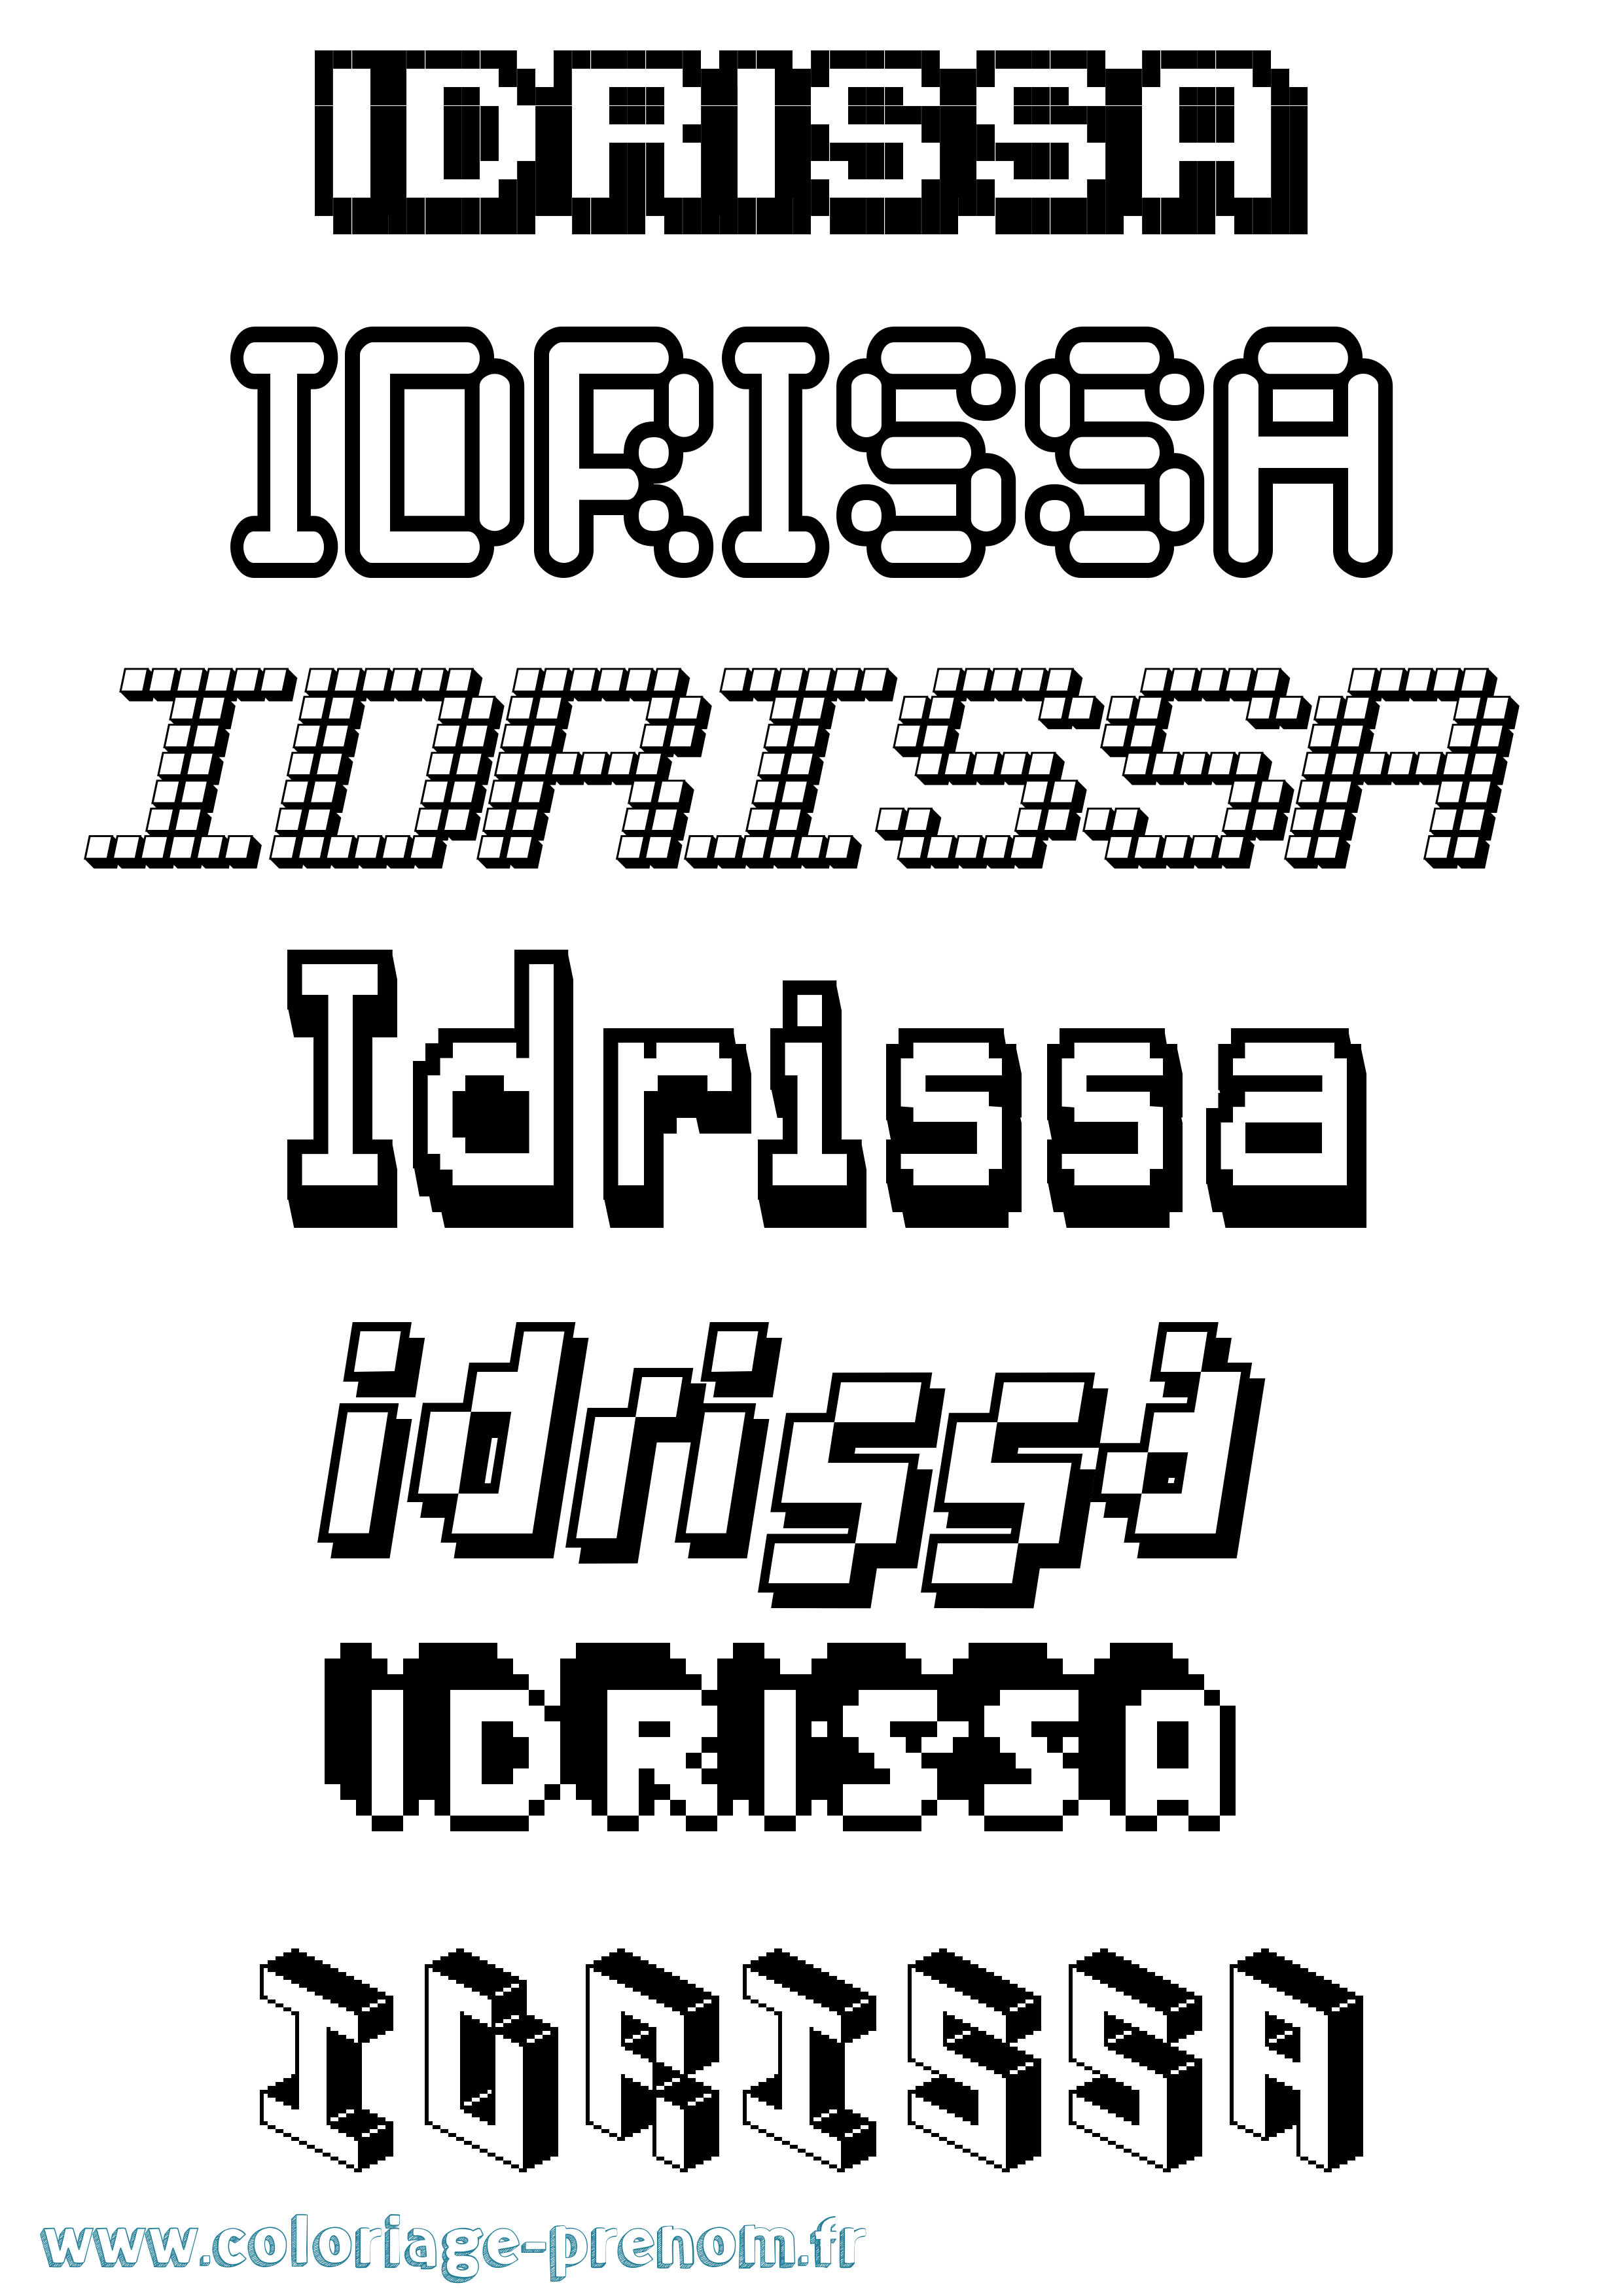 Coloriage prénom Idrissa